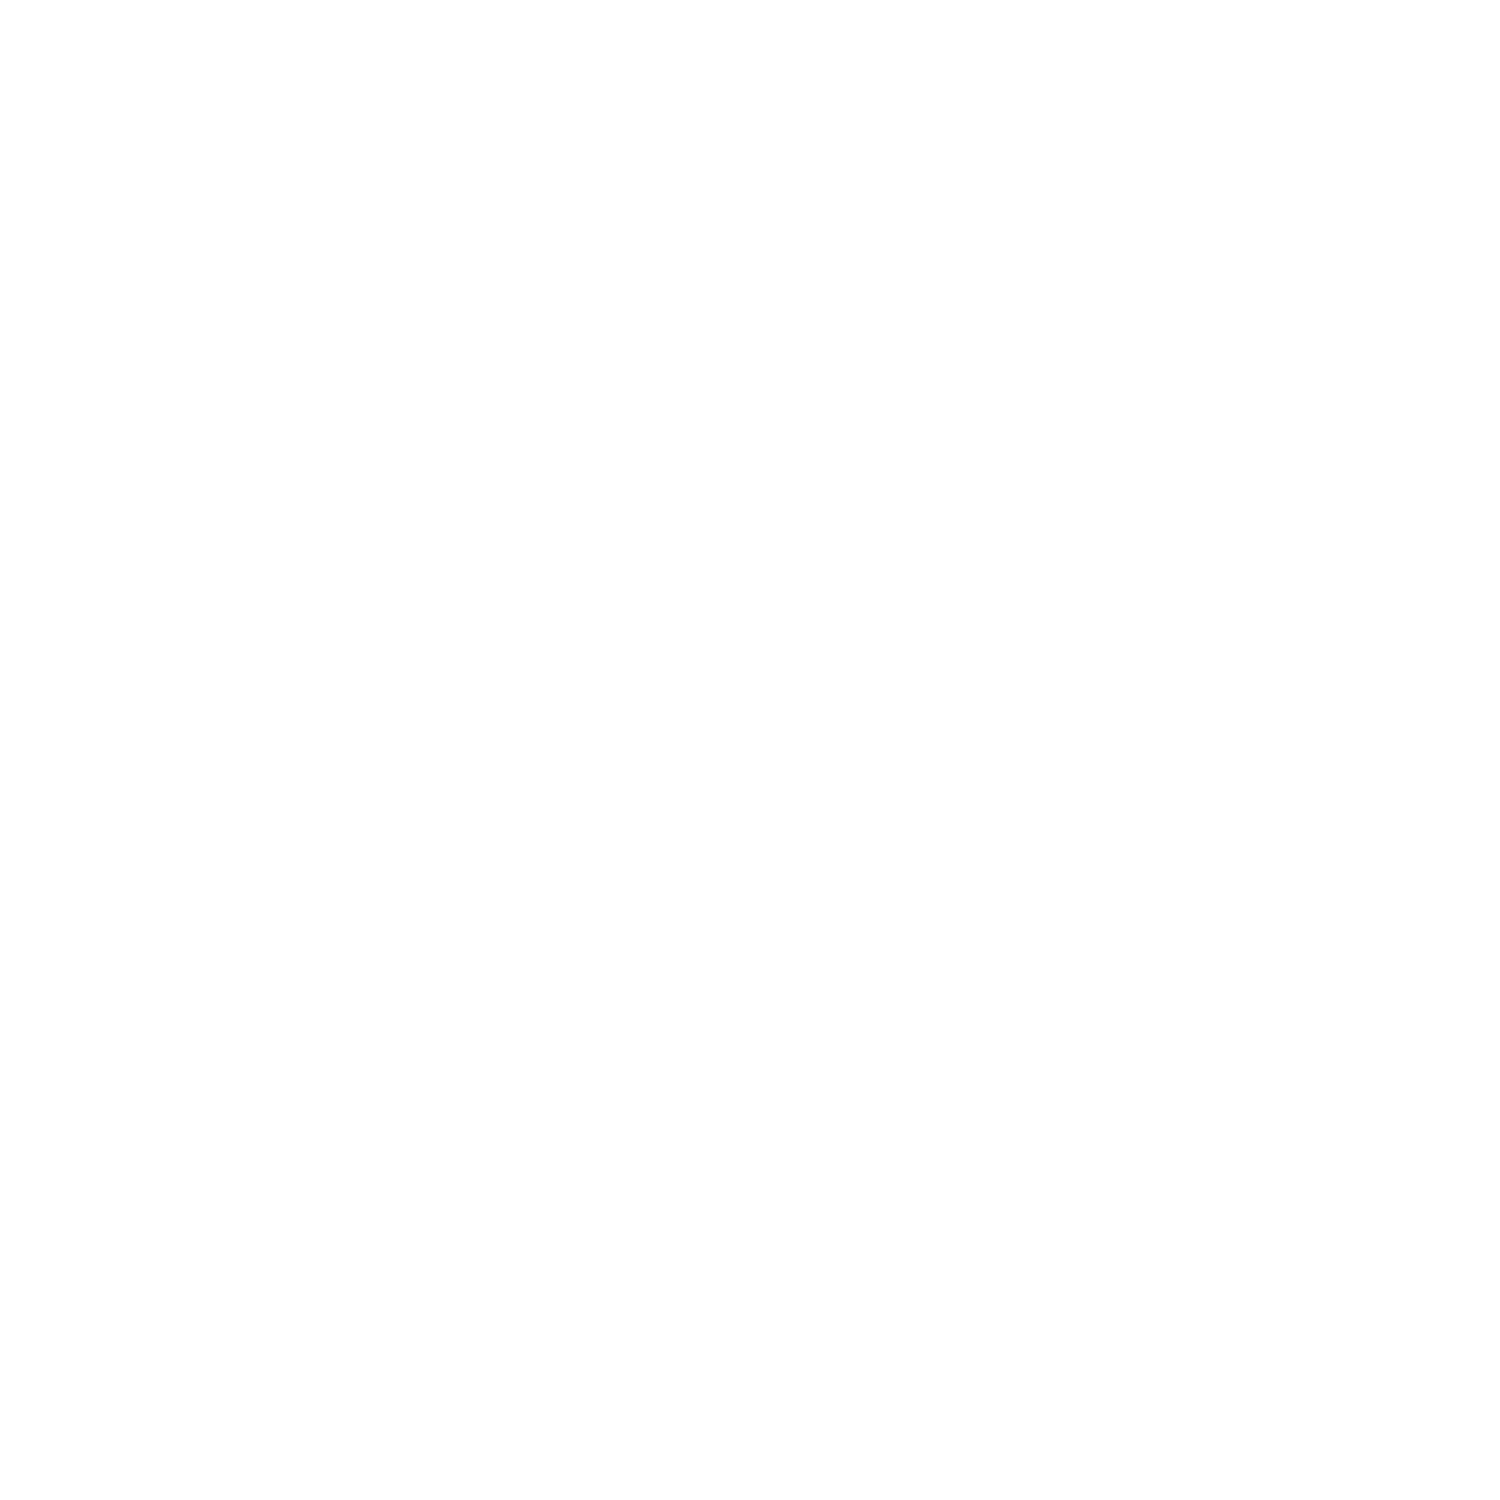 Elevate Leadership Solutions